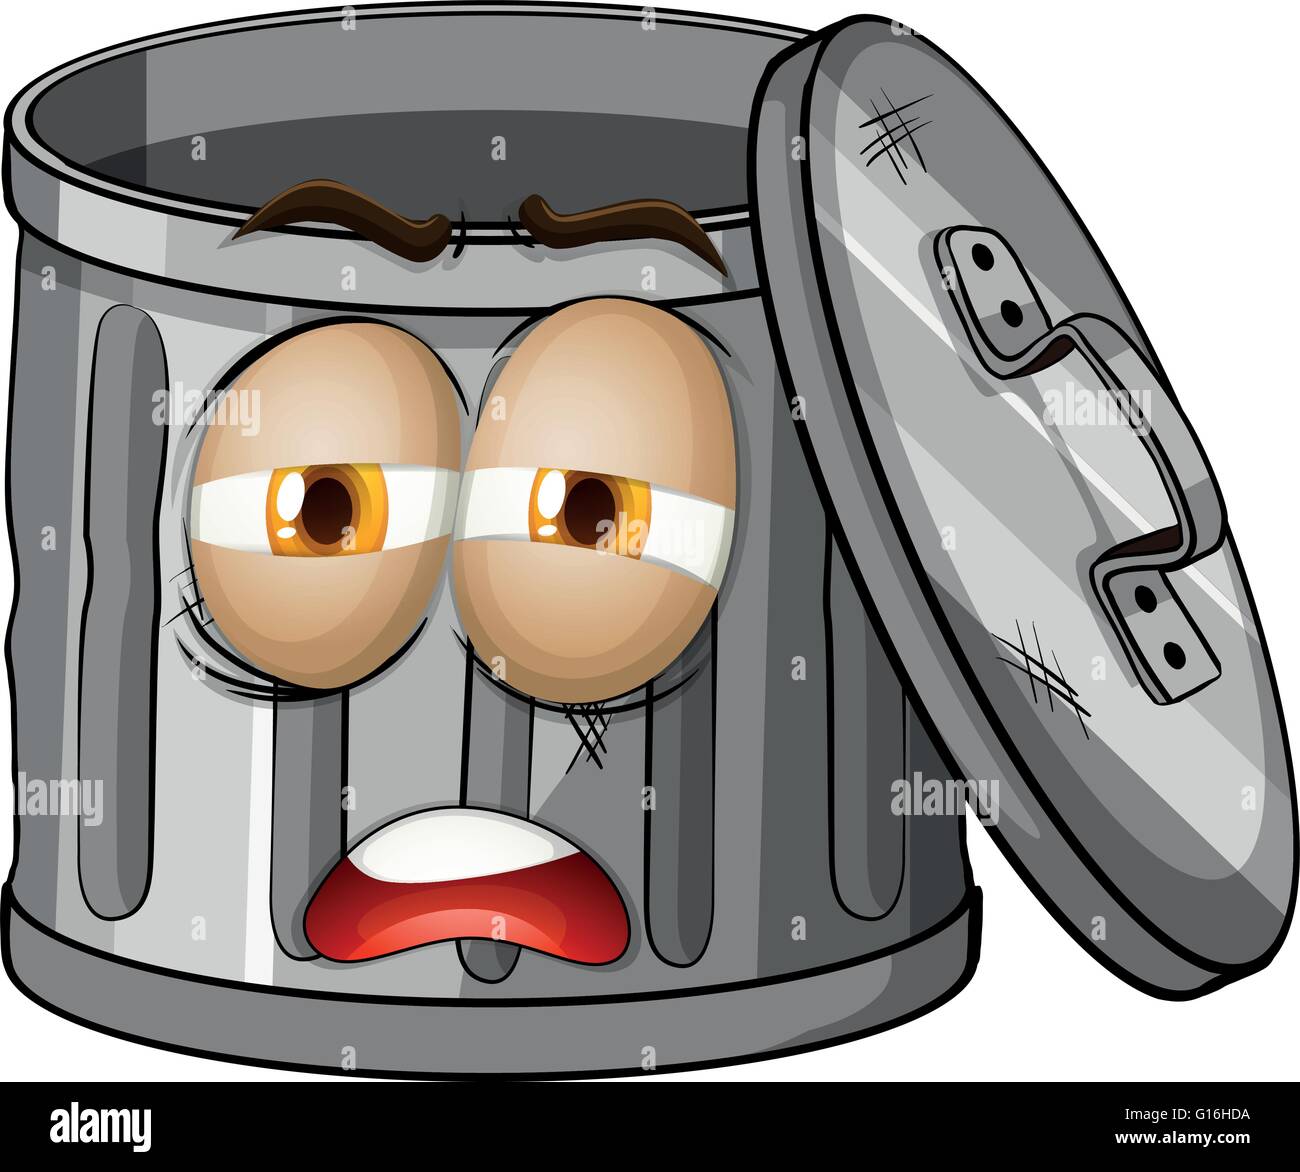 Mülleimer mit traurigen Gesicht illustration Stock-Vektorgrafik - Alamy